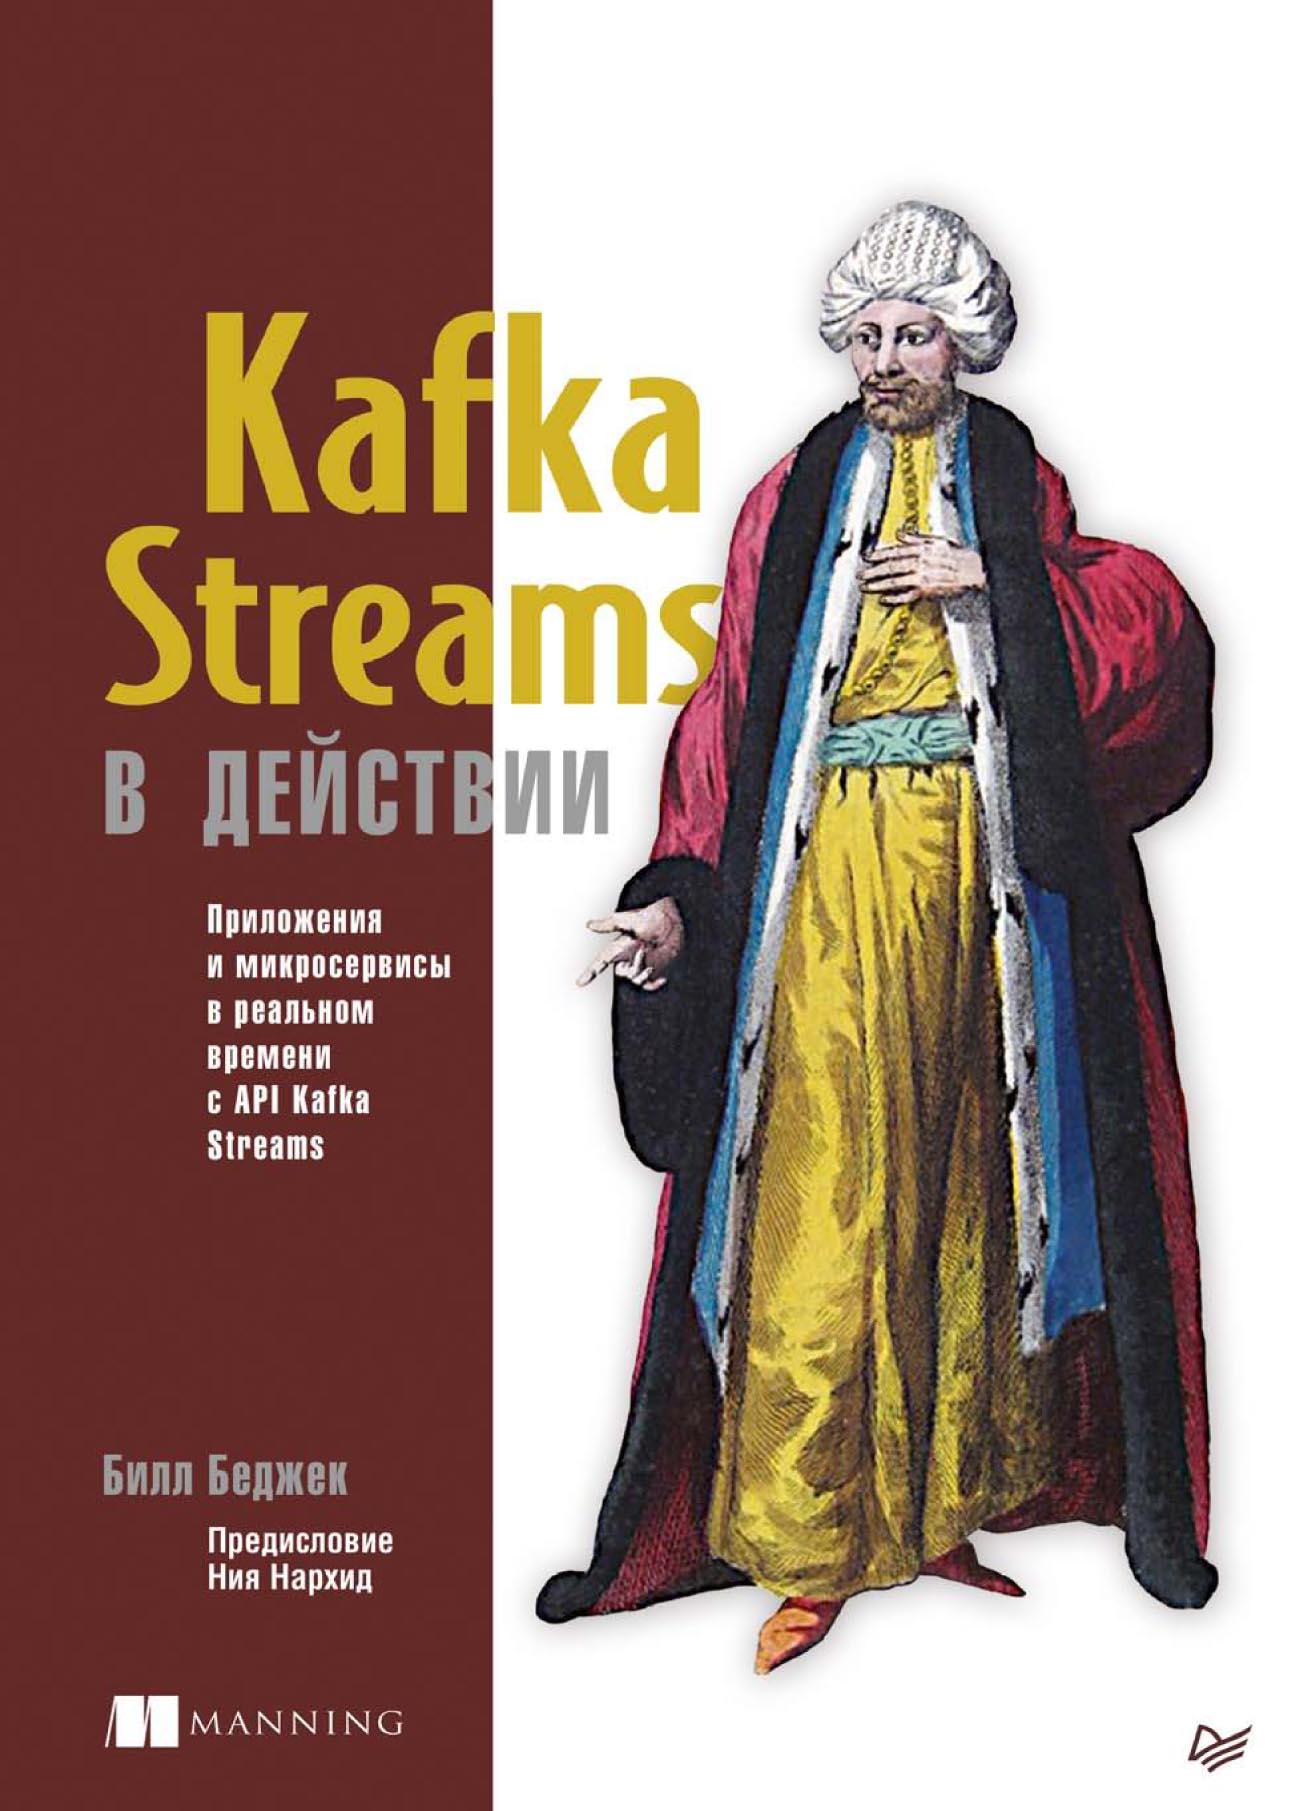 Книга Для профессионалов (Питер) Kafka Streams в действии. Приложения и микросервисы для работы в реальном времени с API Kafka Streams (pdf+epub) созданная Билл Беджек, И. Пальти может относится к жанру базы данных, информационная безопасность, программирование. Стоимость электронной книги Kafka Streams в действии. Приложения и микросервисы для работы в реальном времени с API Kafka Streams (pdf+epub) с идентификатором 64085361 составляет 699.00 руб.